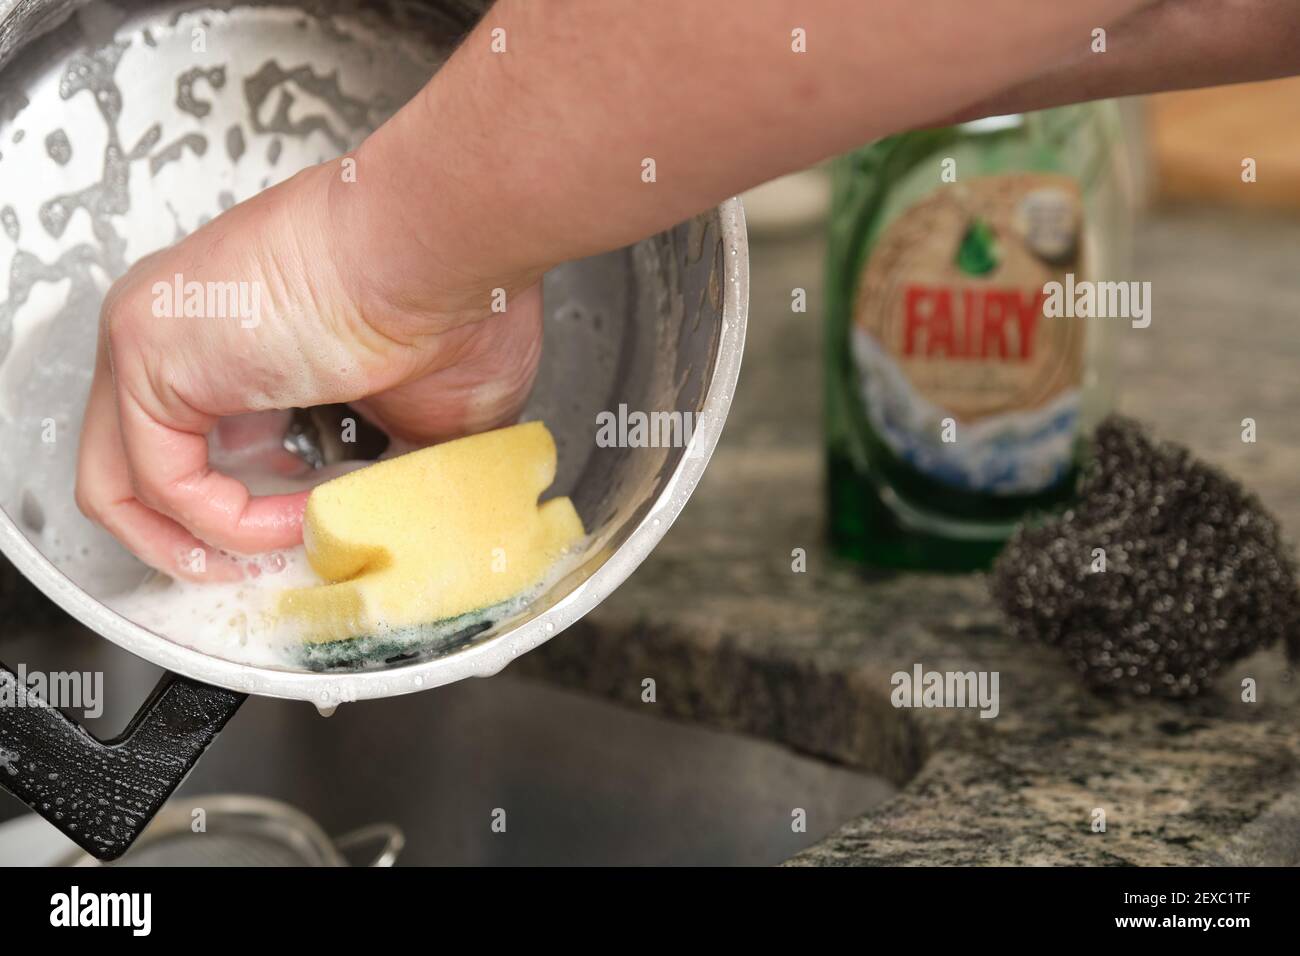 Madrid, Spanien. 4. Januar 2021: Mann Hände waschen einen Topf oder das Geschirr mit Fee. Stockfoto